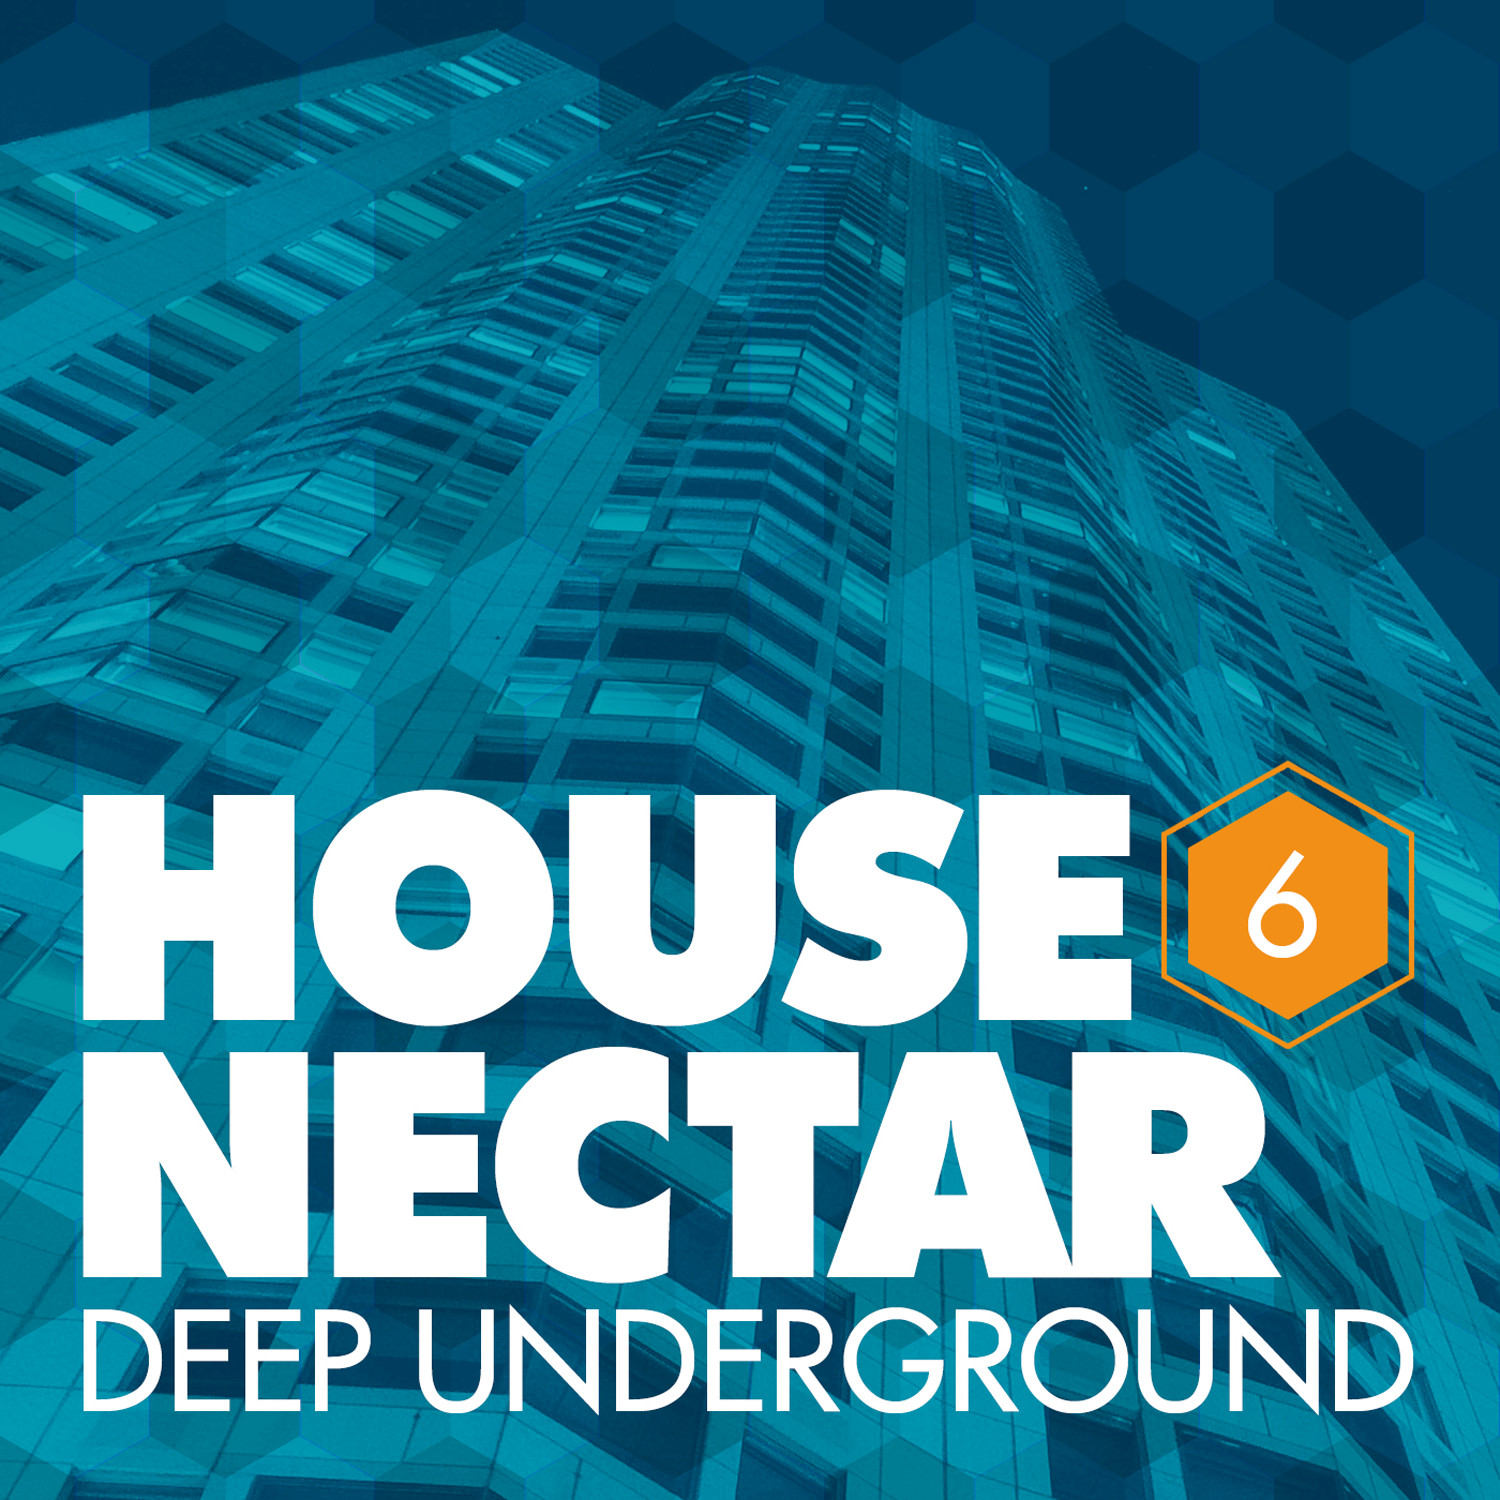 Underground House Nectar, Vol. 6